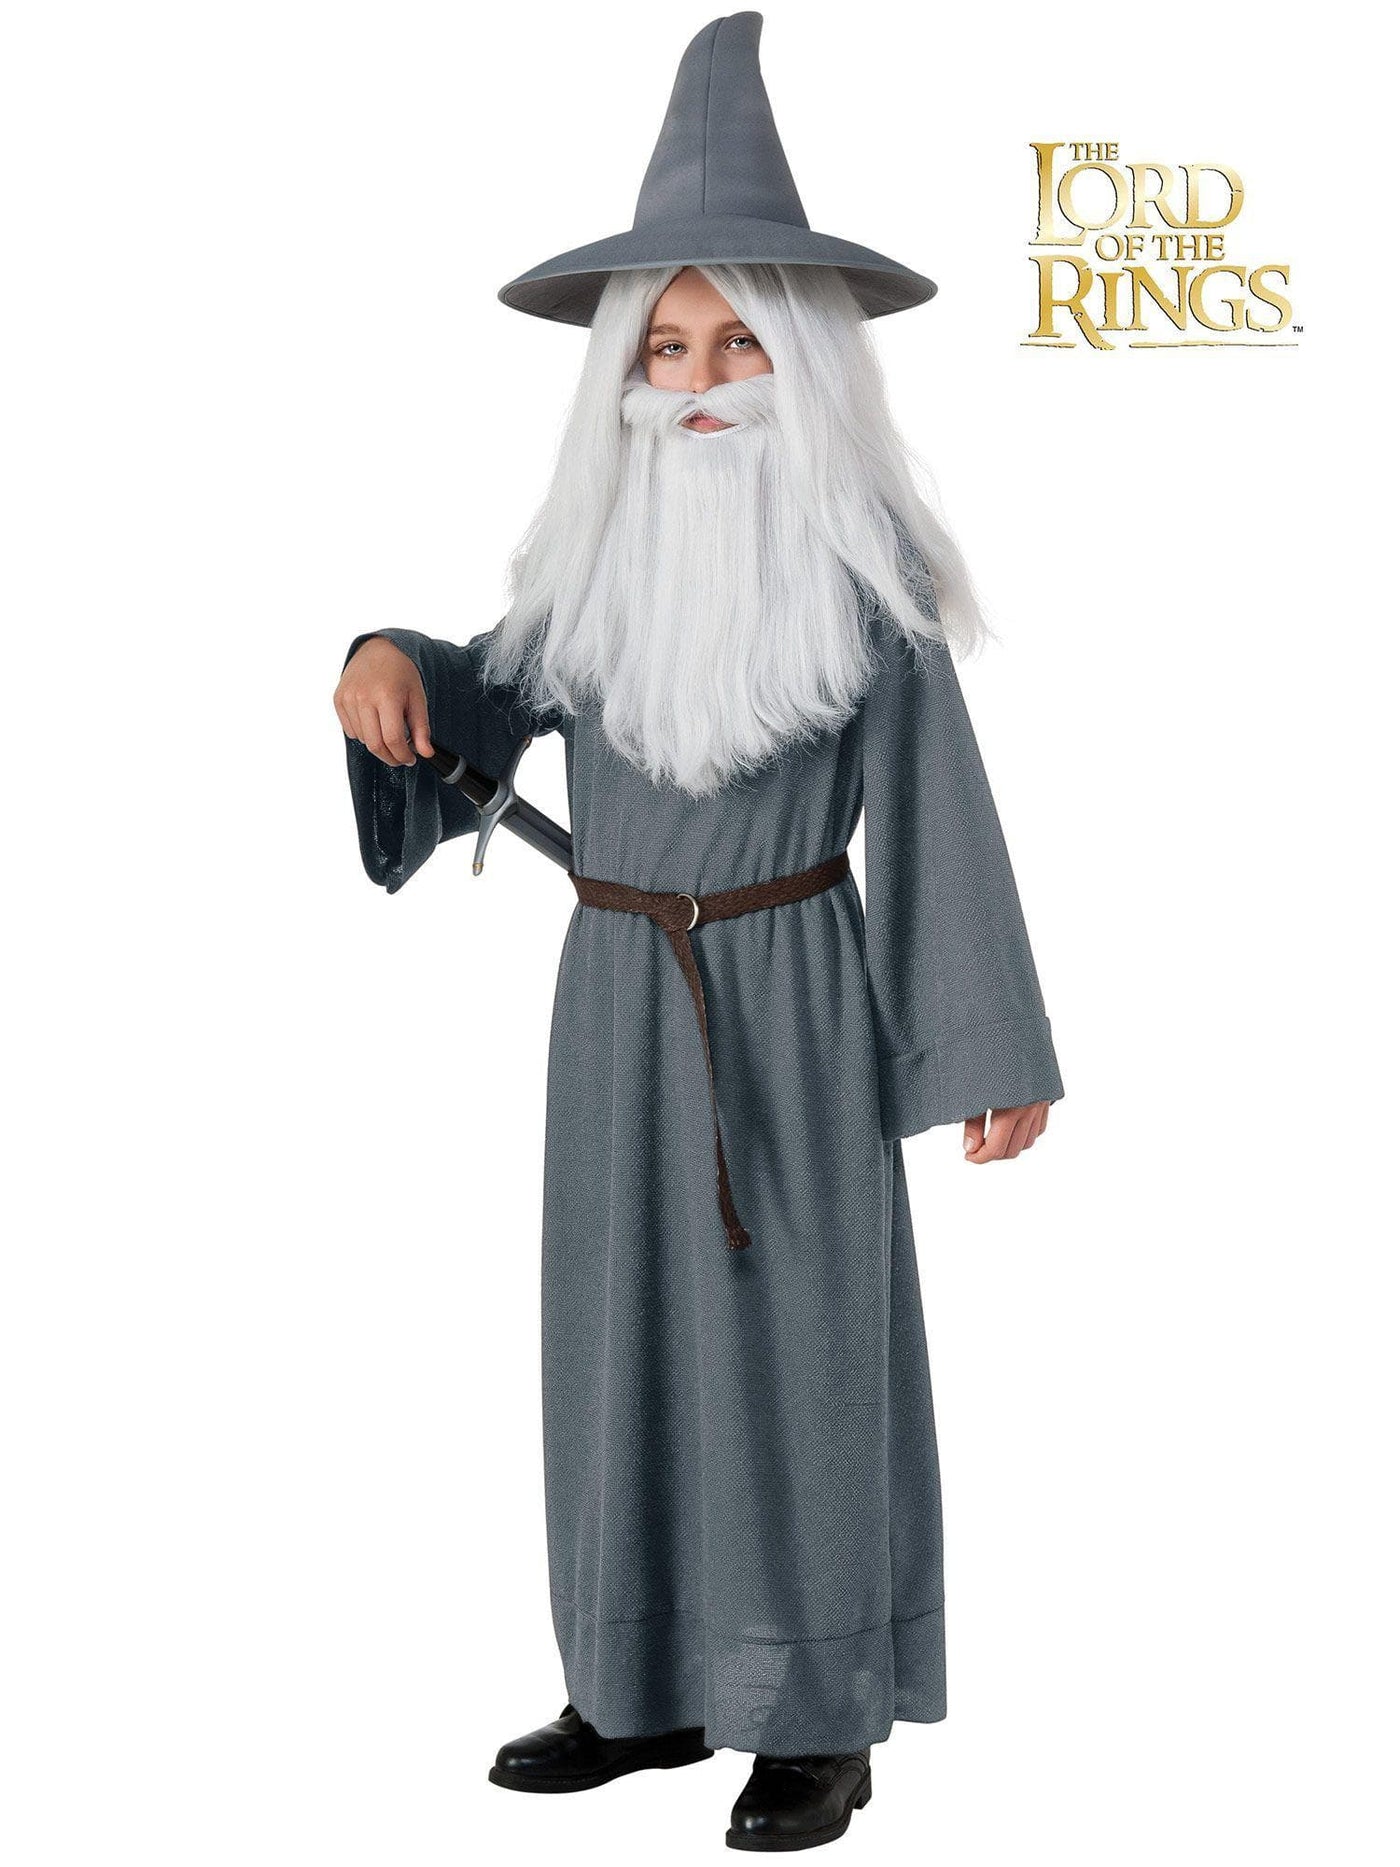 The Hobbit Gandalf Costume for Kids